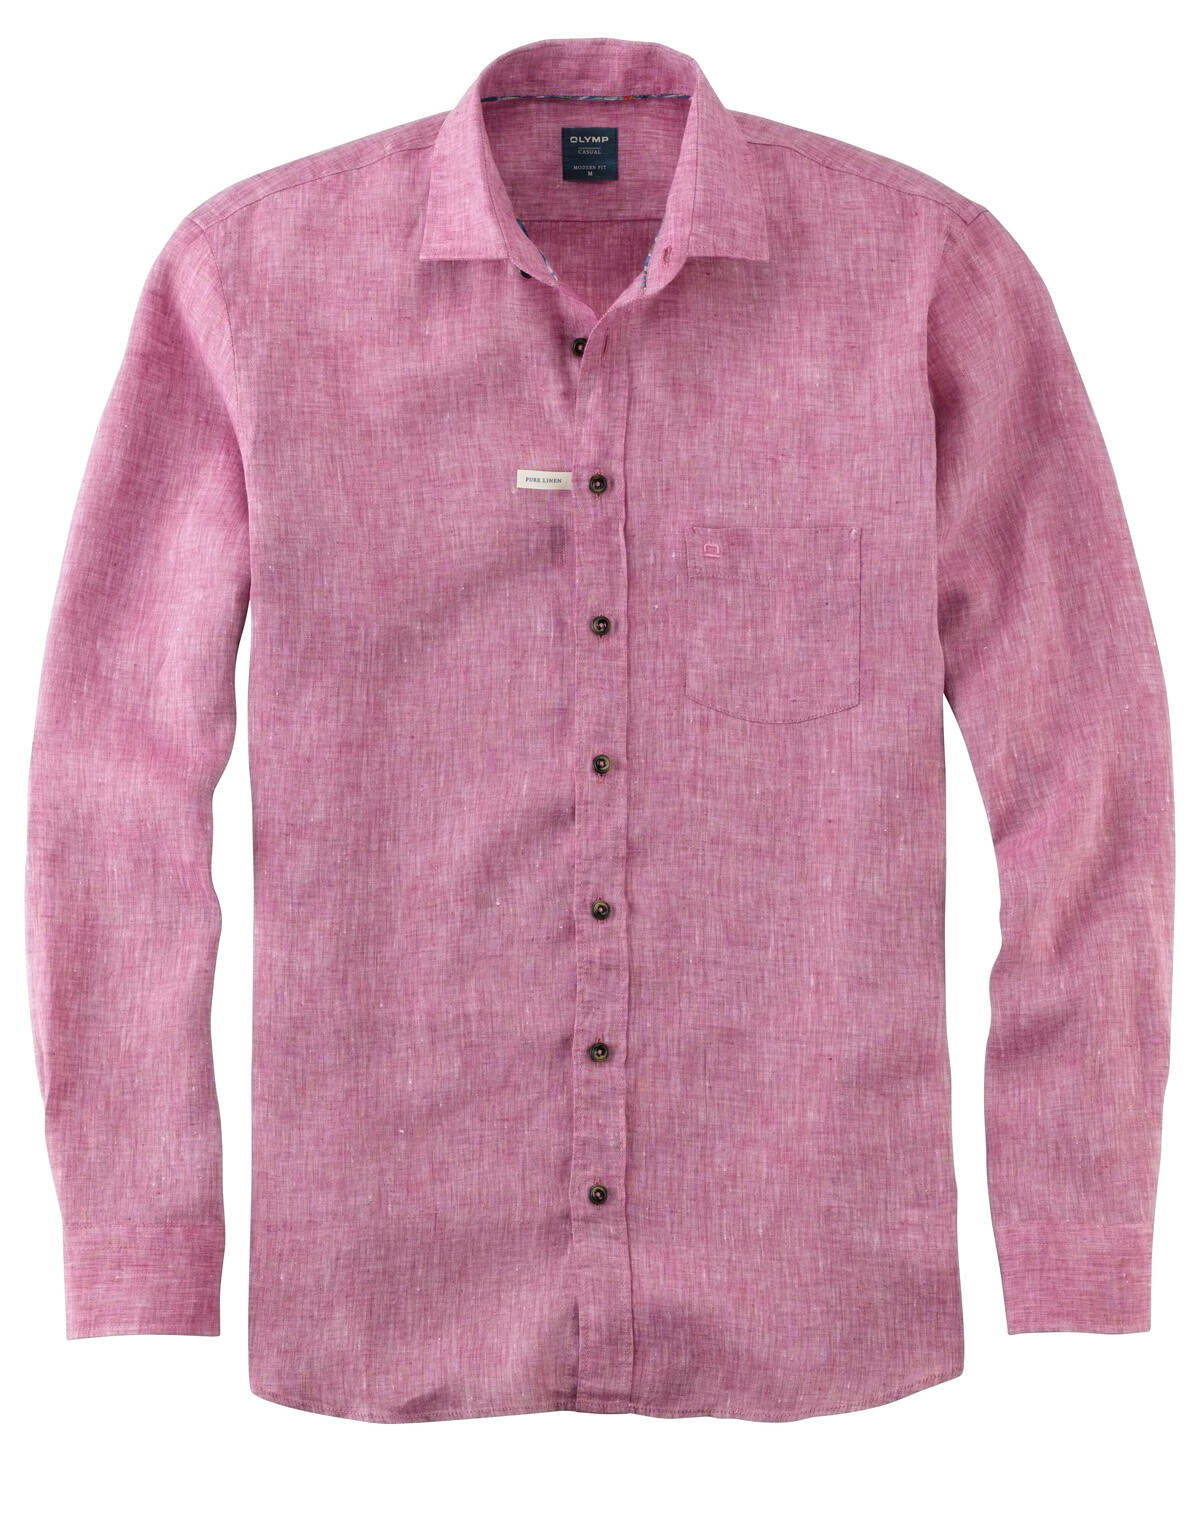 Рубашка льняная розовая мужская OLYMP Casual[Розовый]